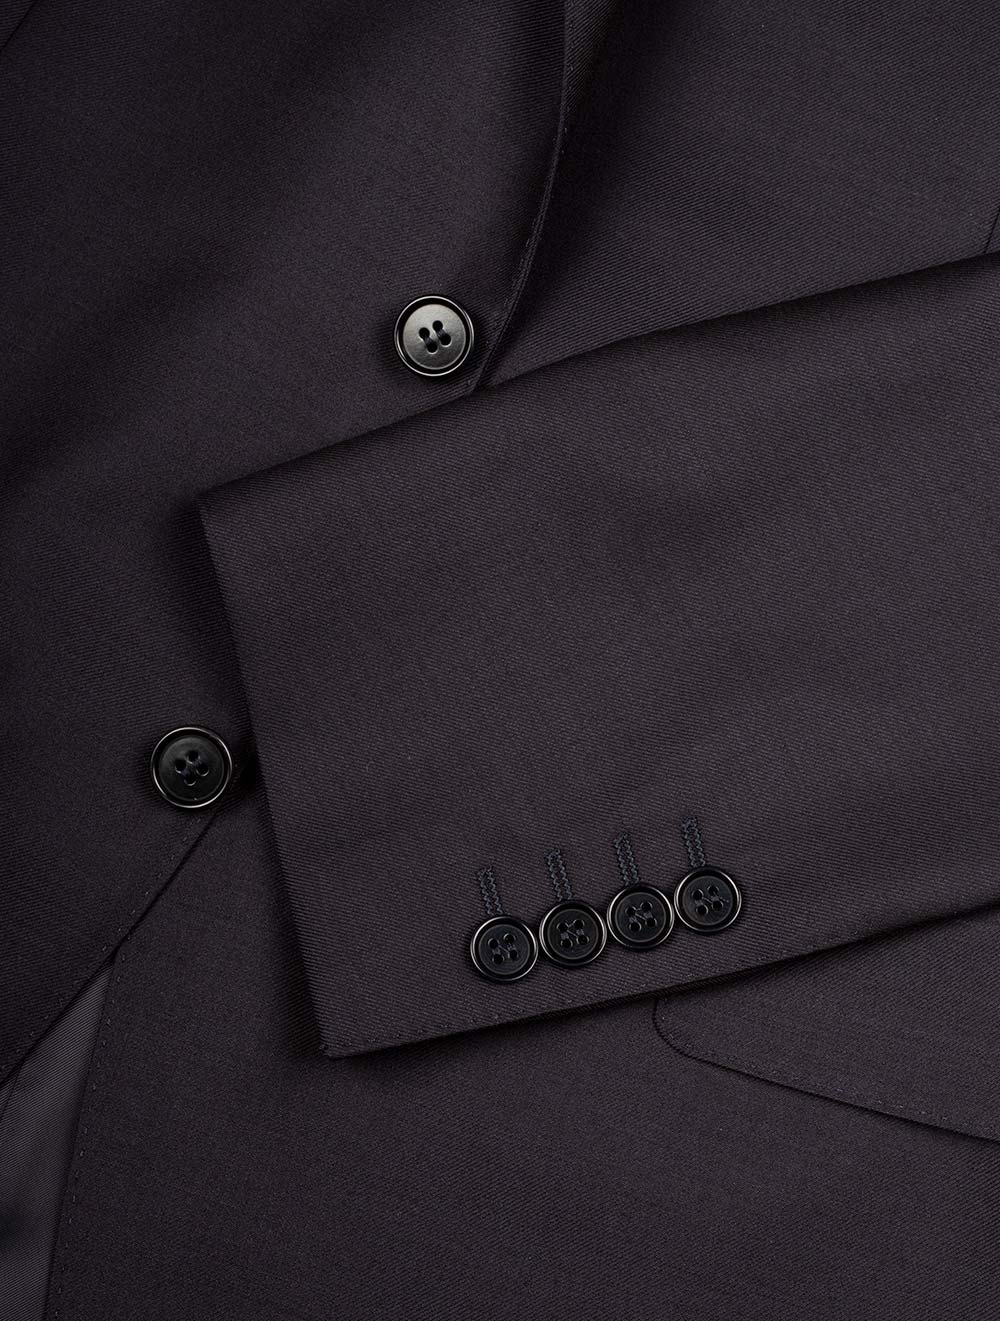 Canali Classic Suit Navy 2 Piece 2 Button Notch Lapel Soft Shoulder Flap Pockets 5